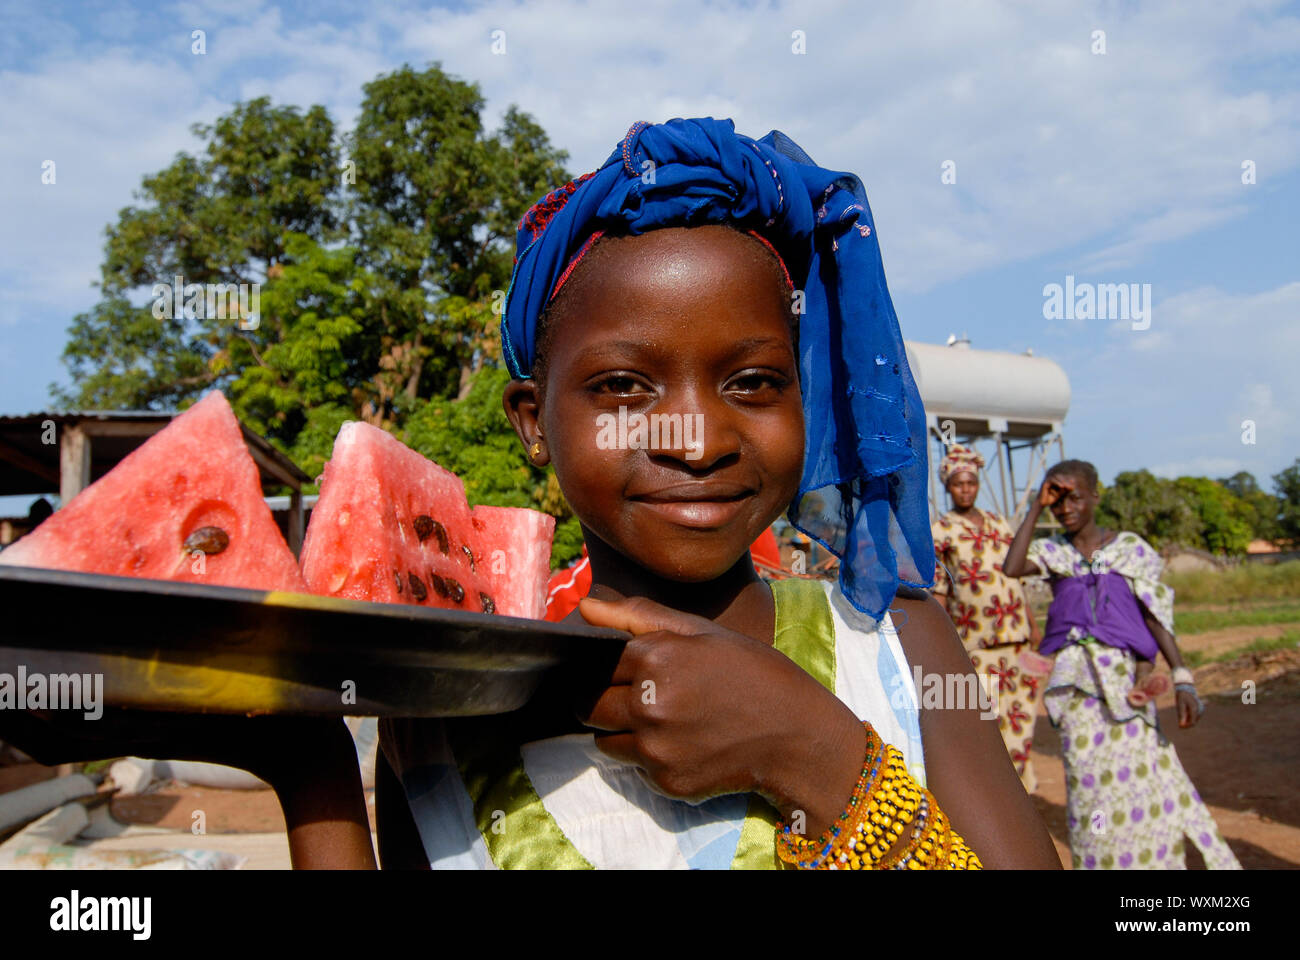 MALI, village Faragouaran , girl sells watermelon pieces on the market / Markt im Dorf Faragouaran, Maedchen verkauft Wassermelone um Geld zu verdienen Stock Photo